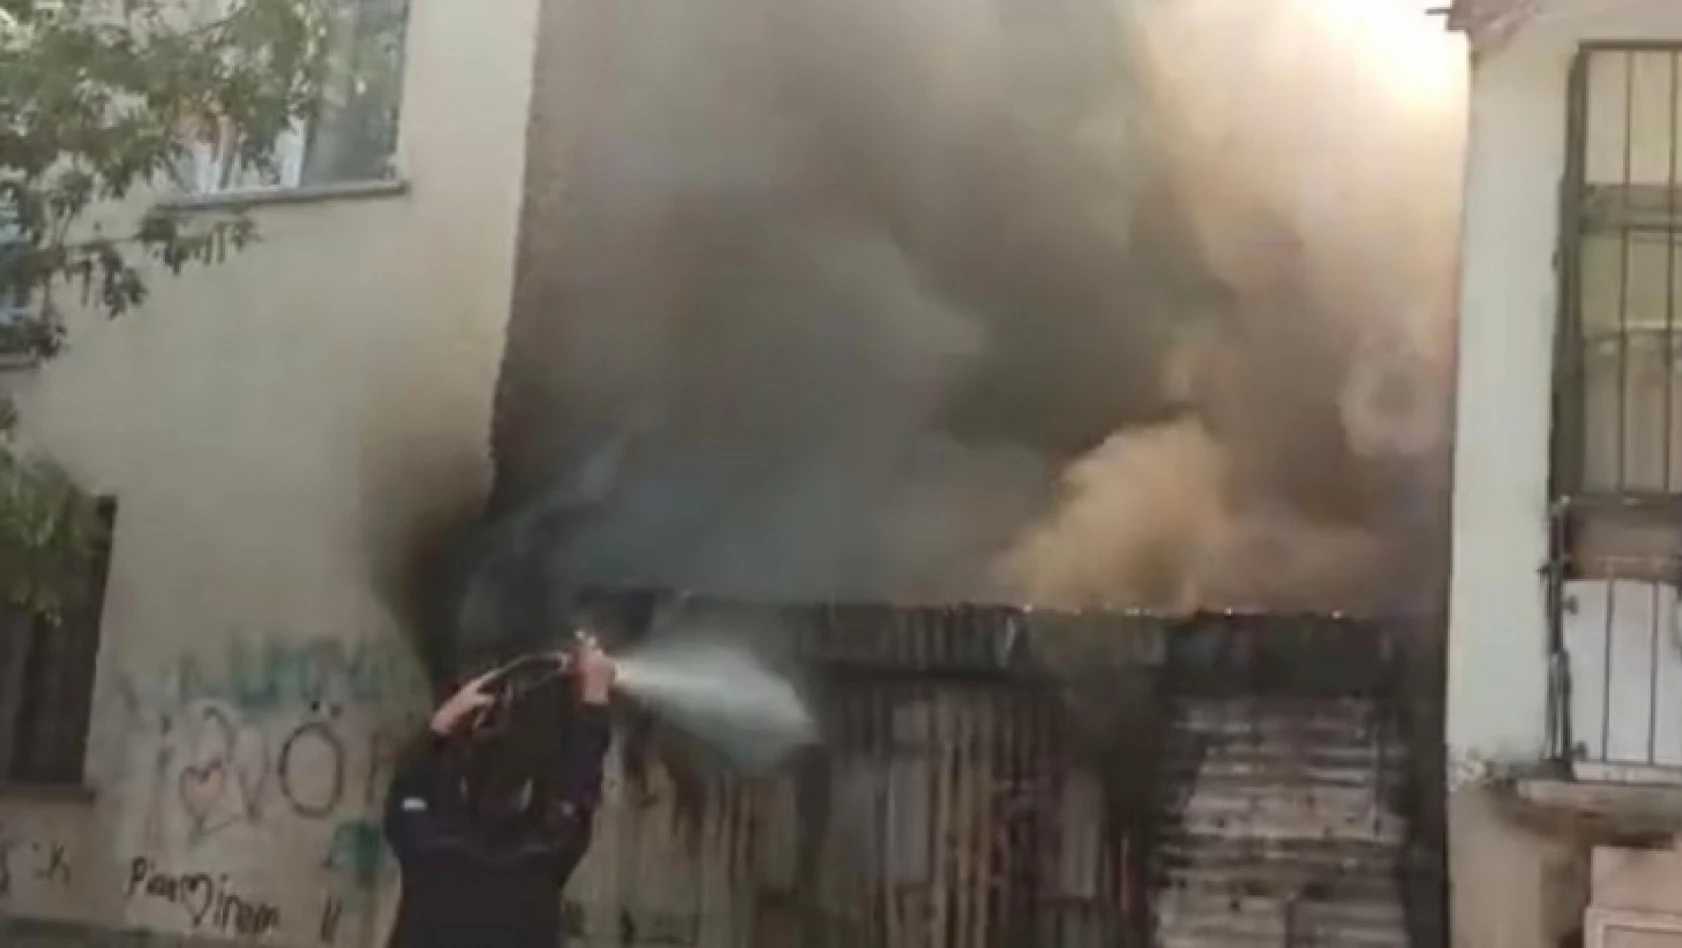 Elazığ'da baraka yandı, iki binaya sıçraması ekiplerin müdahalesiyle engellendi